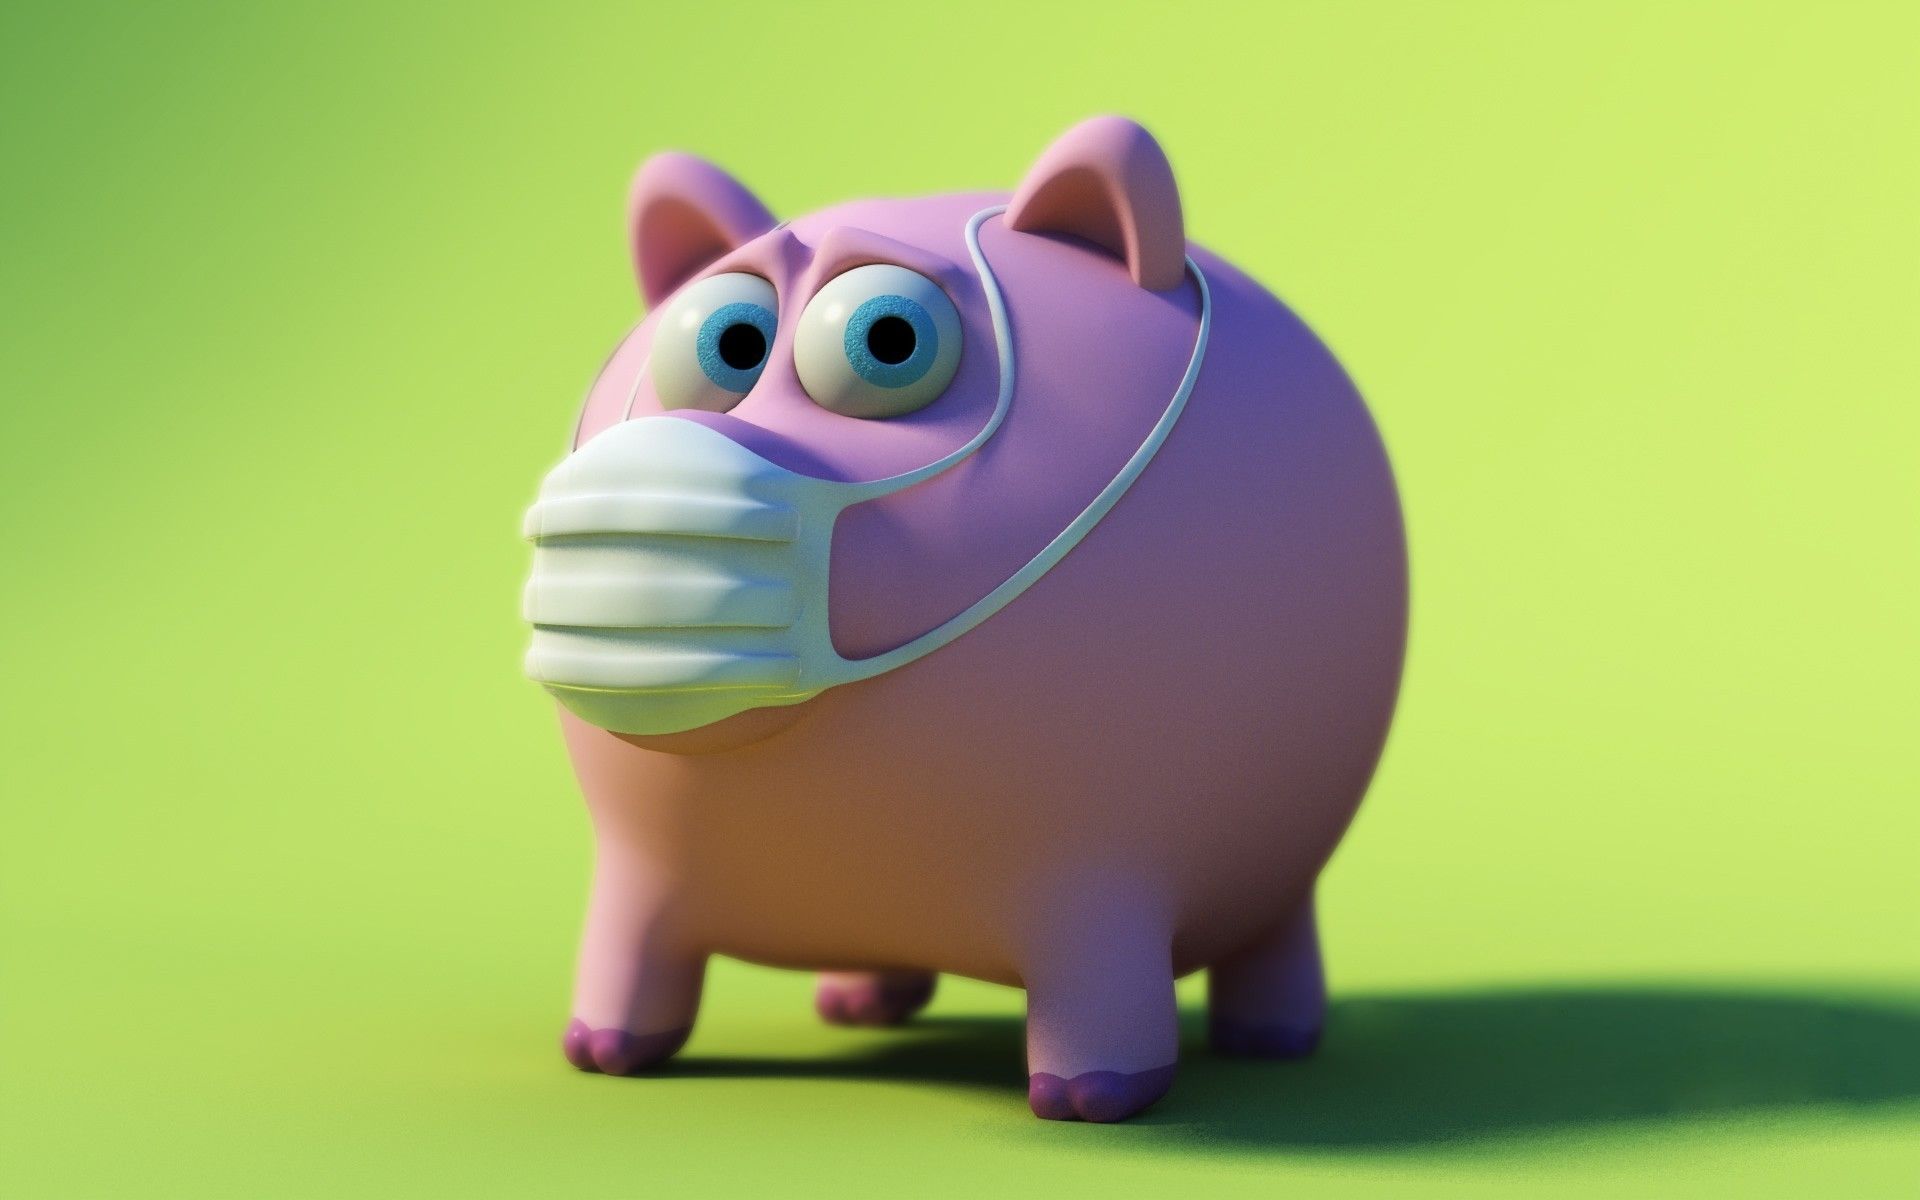 Pig piggy bank mask HD wallpaper .com